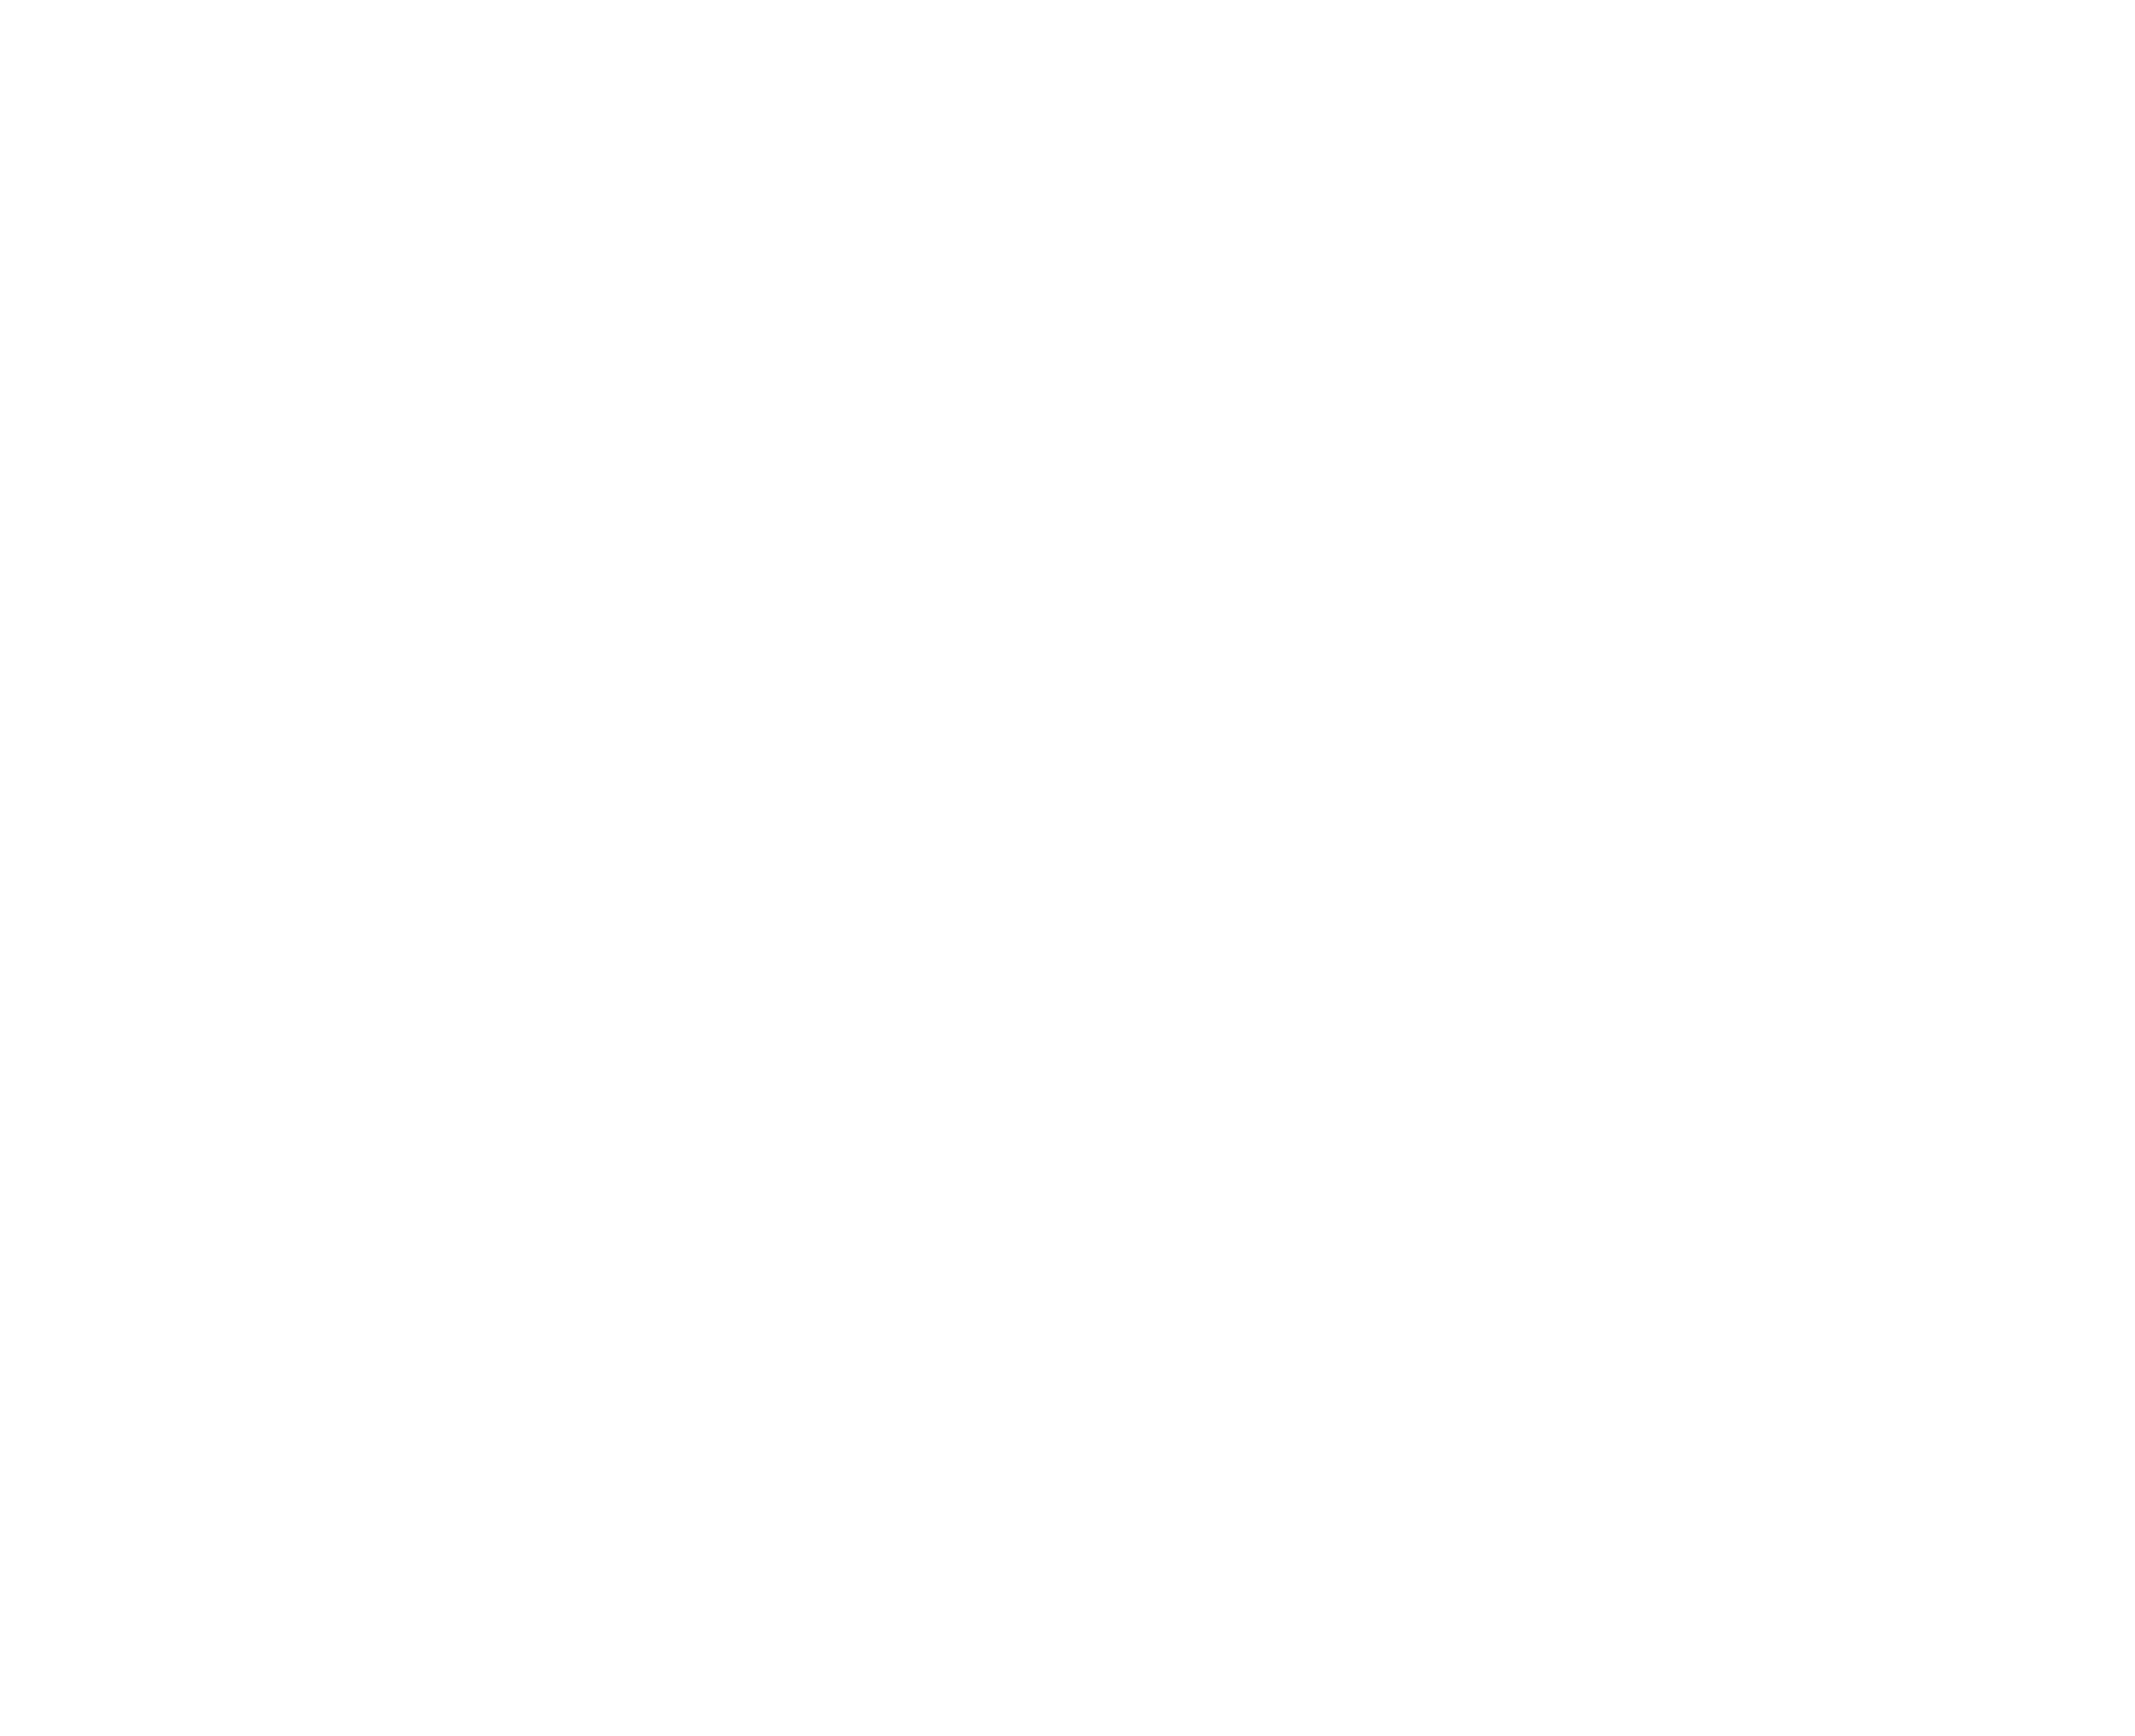 NadiFit